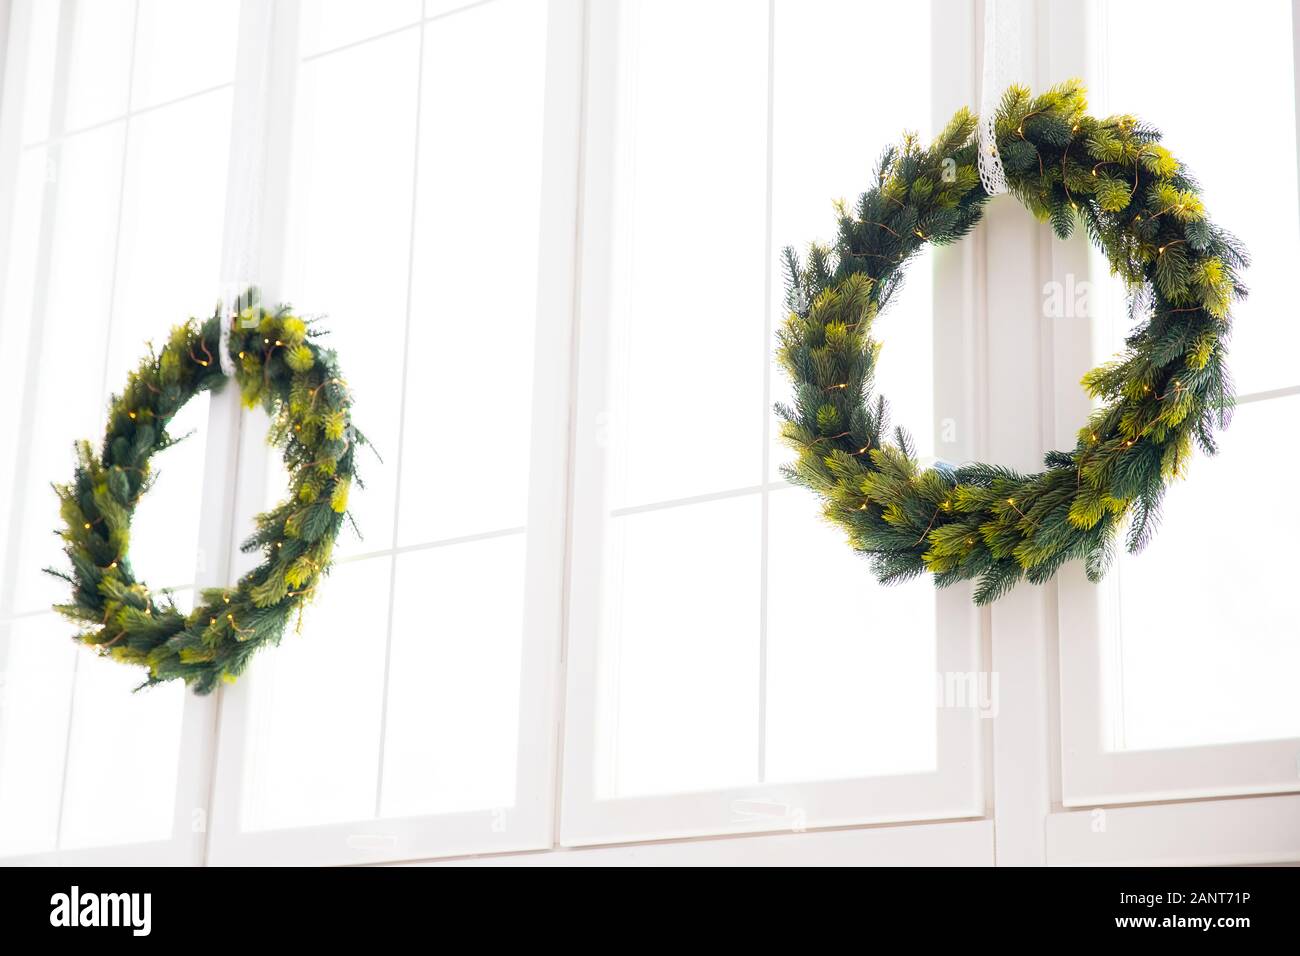 Dekor Weihnachten Kranz an den weißen Fenster, Urlaub Dekoration  Stockfotografie - Alamy